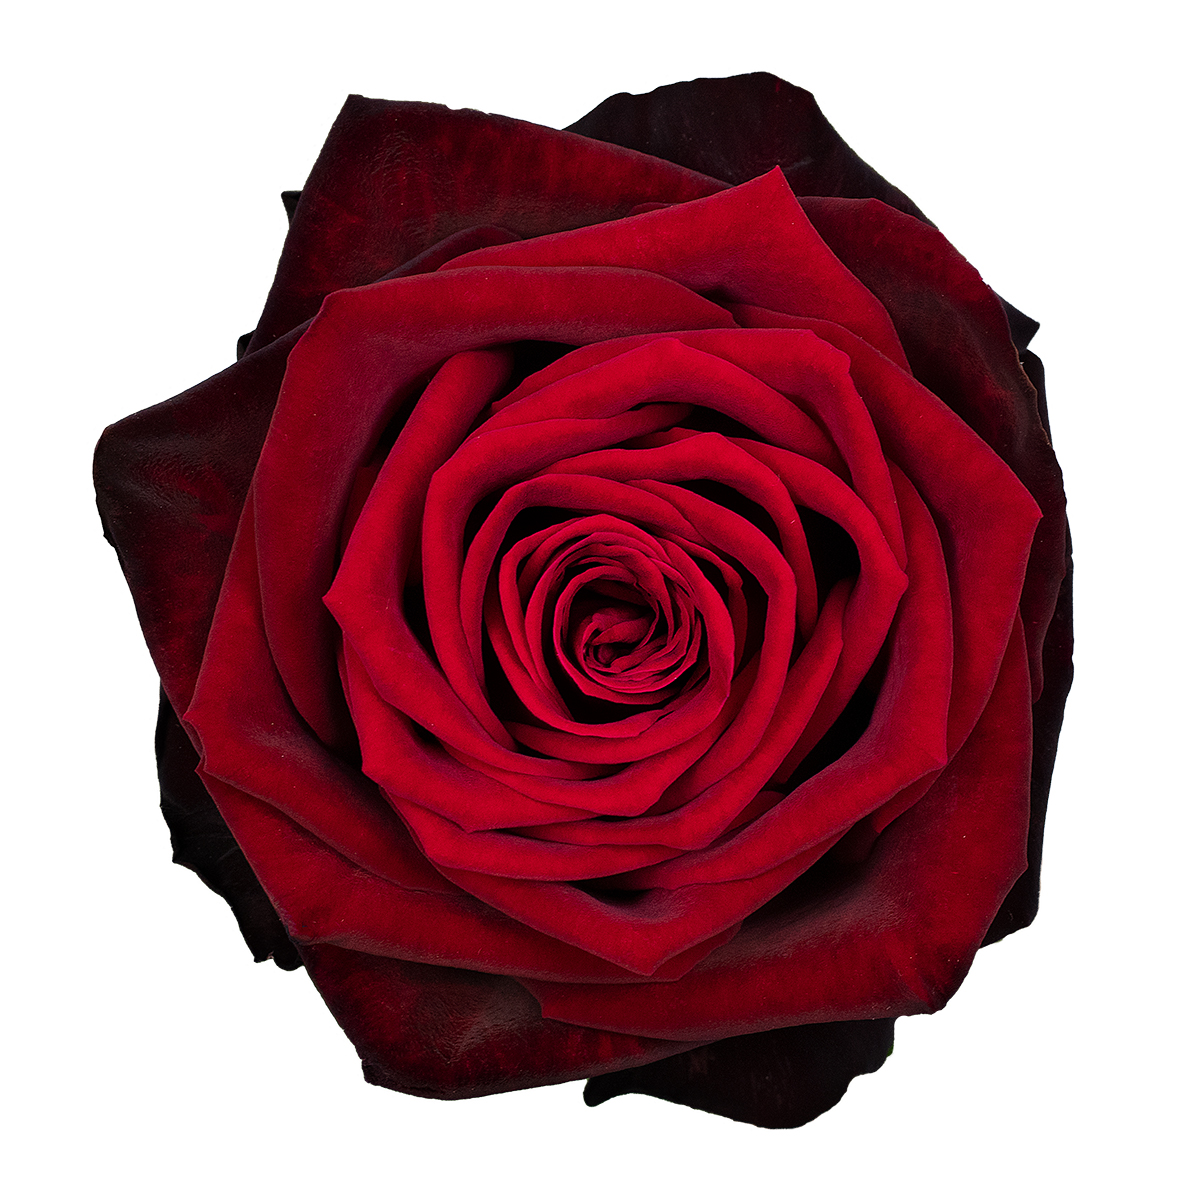 BLACK GOLD rose - Florist Rose Paradise! - Decofresh TOTF2020 on Thursd